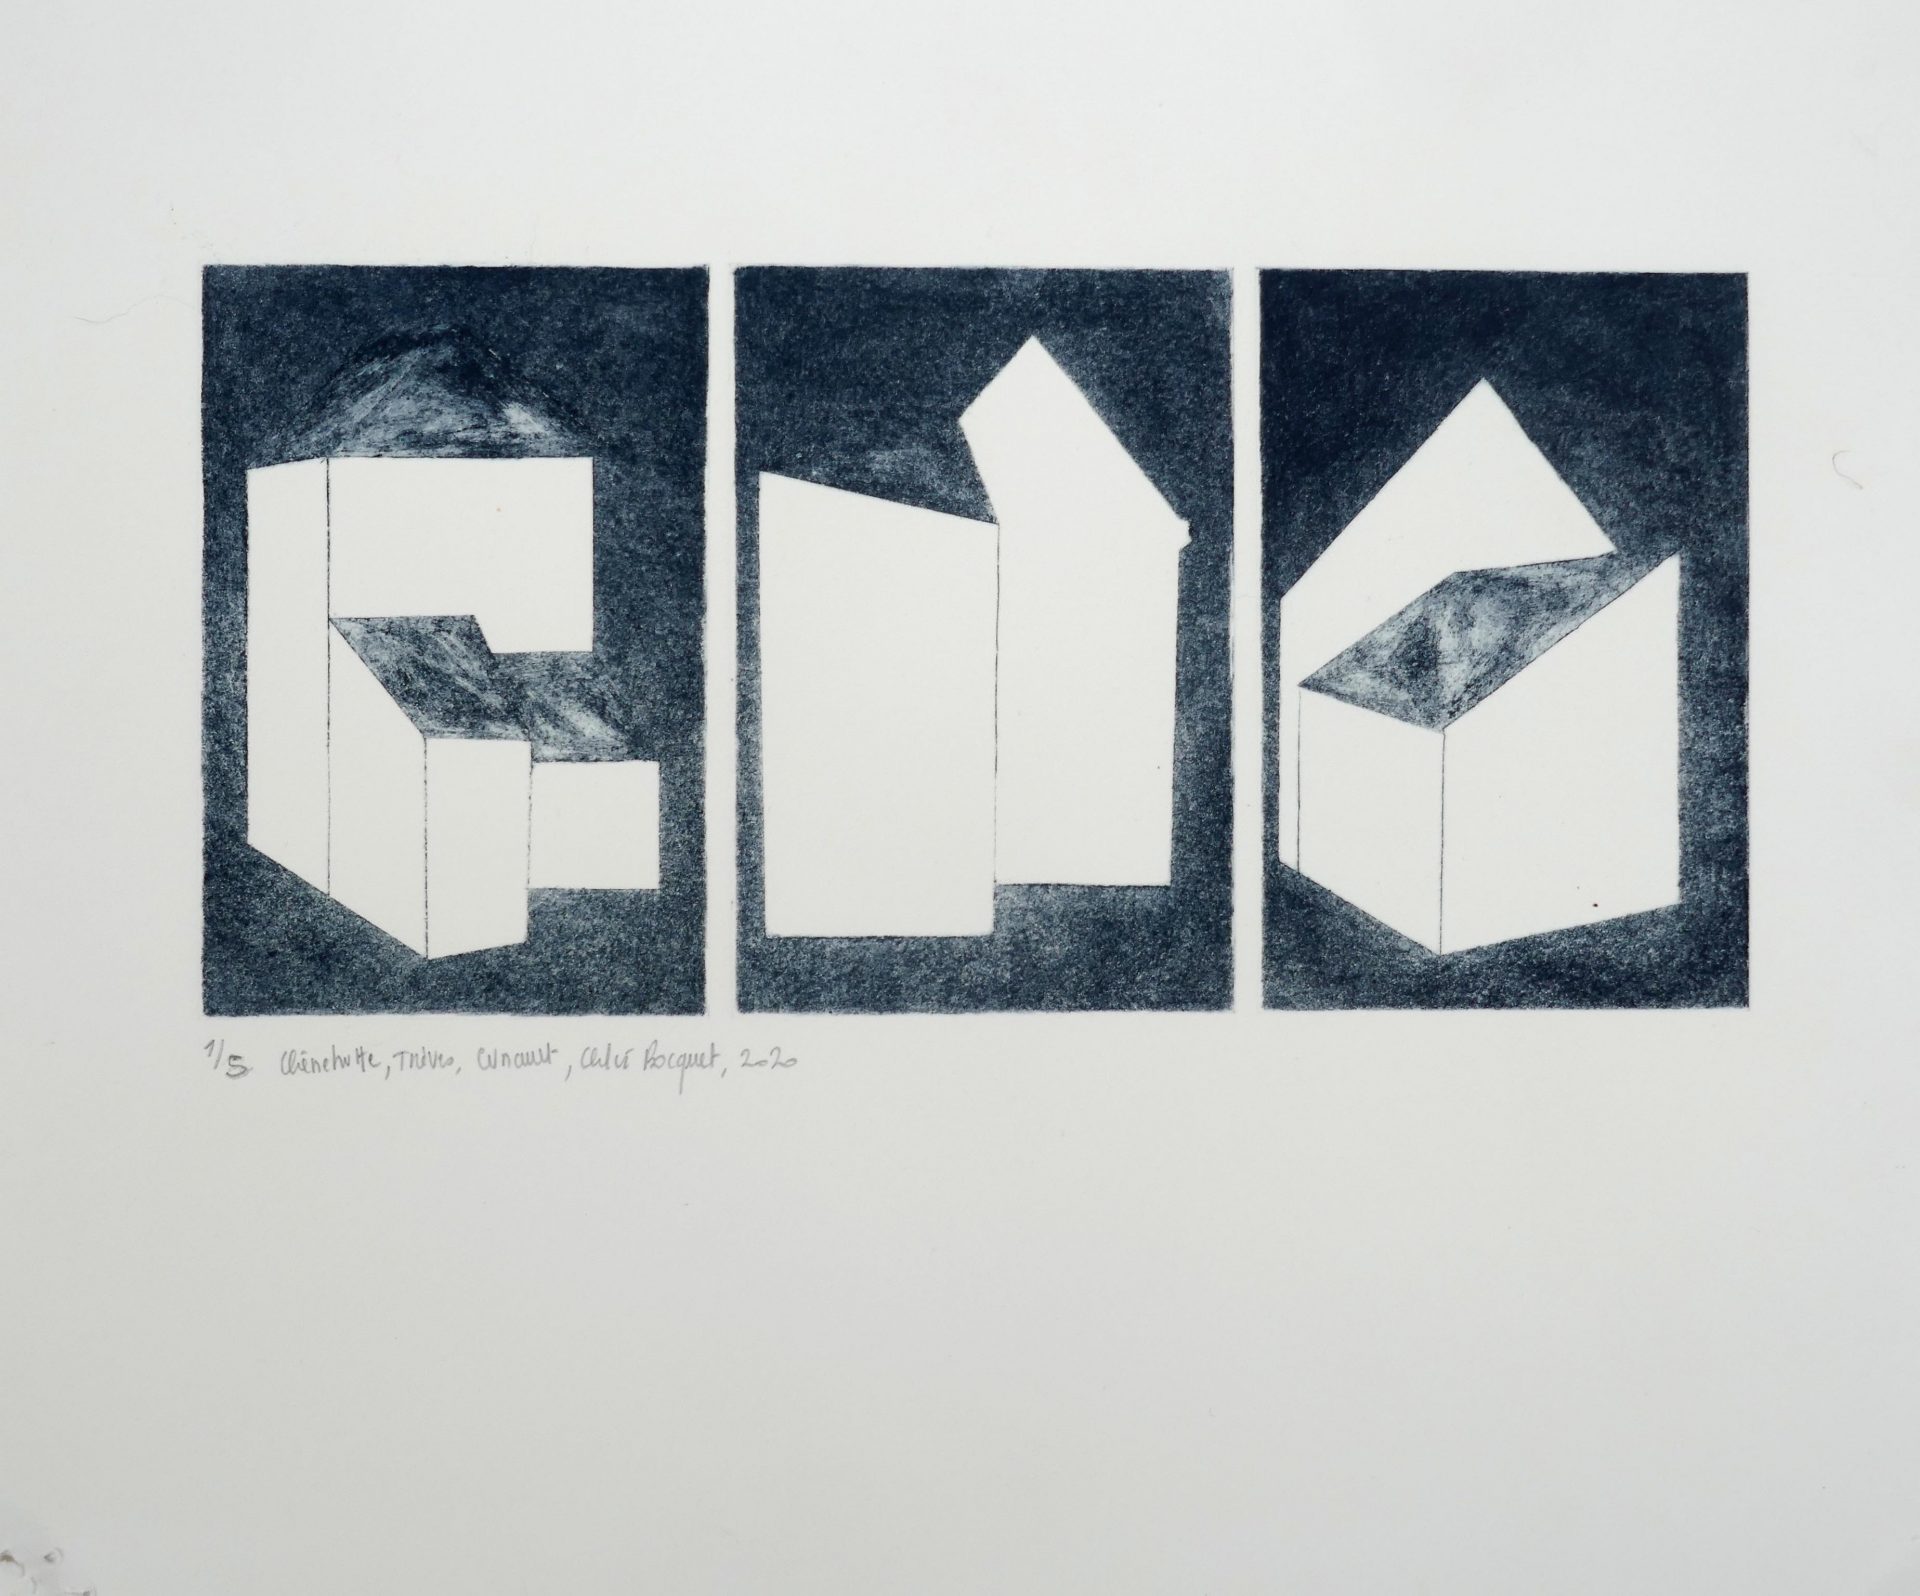 Chênehutte- Trèves-Cunault, 2020, drypoints, image size 30x15 cm, paper size 33 x39 cm, edition of 5